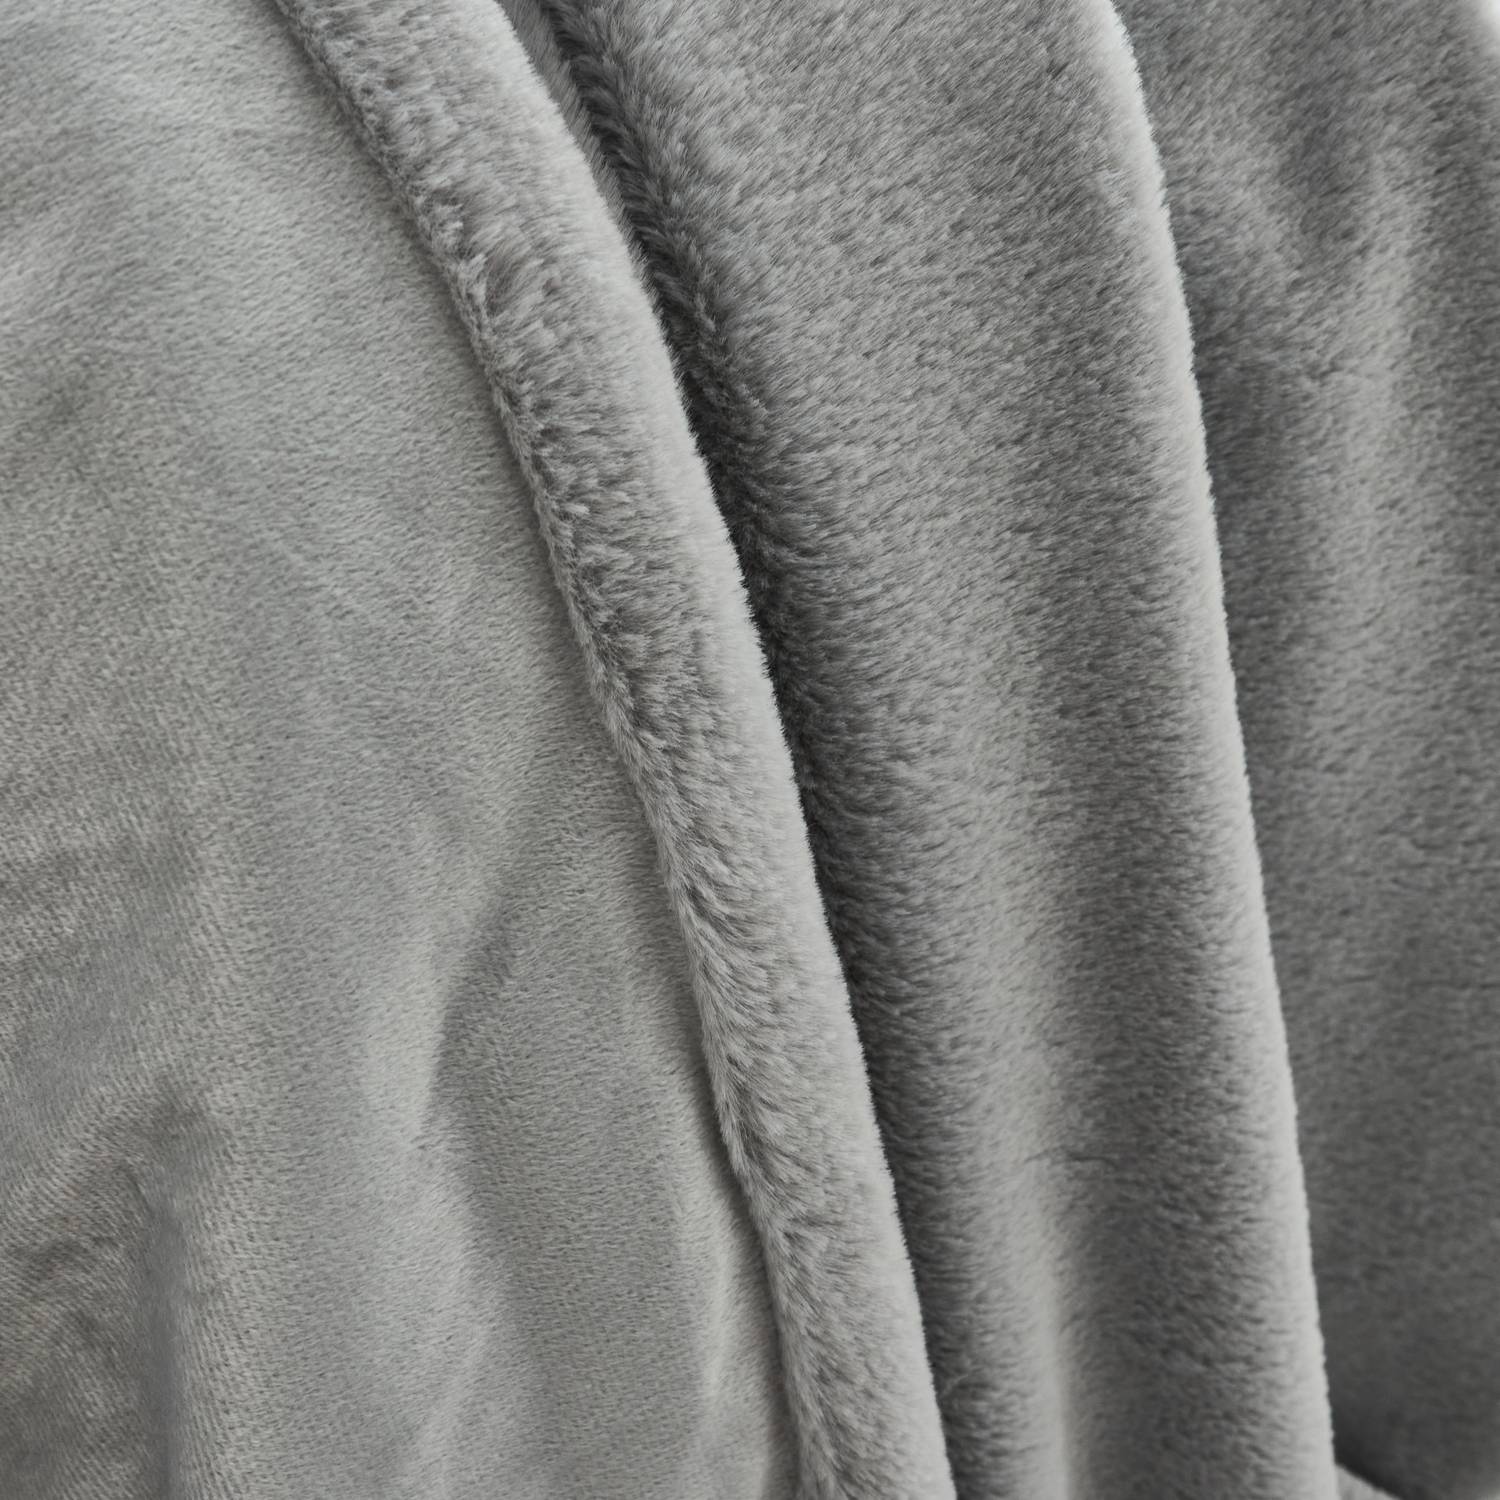 Plaid fausse fourrure gris clair poil long doublure polaire 130 x 160cm - LAPONIE Photo2